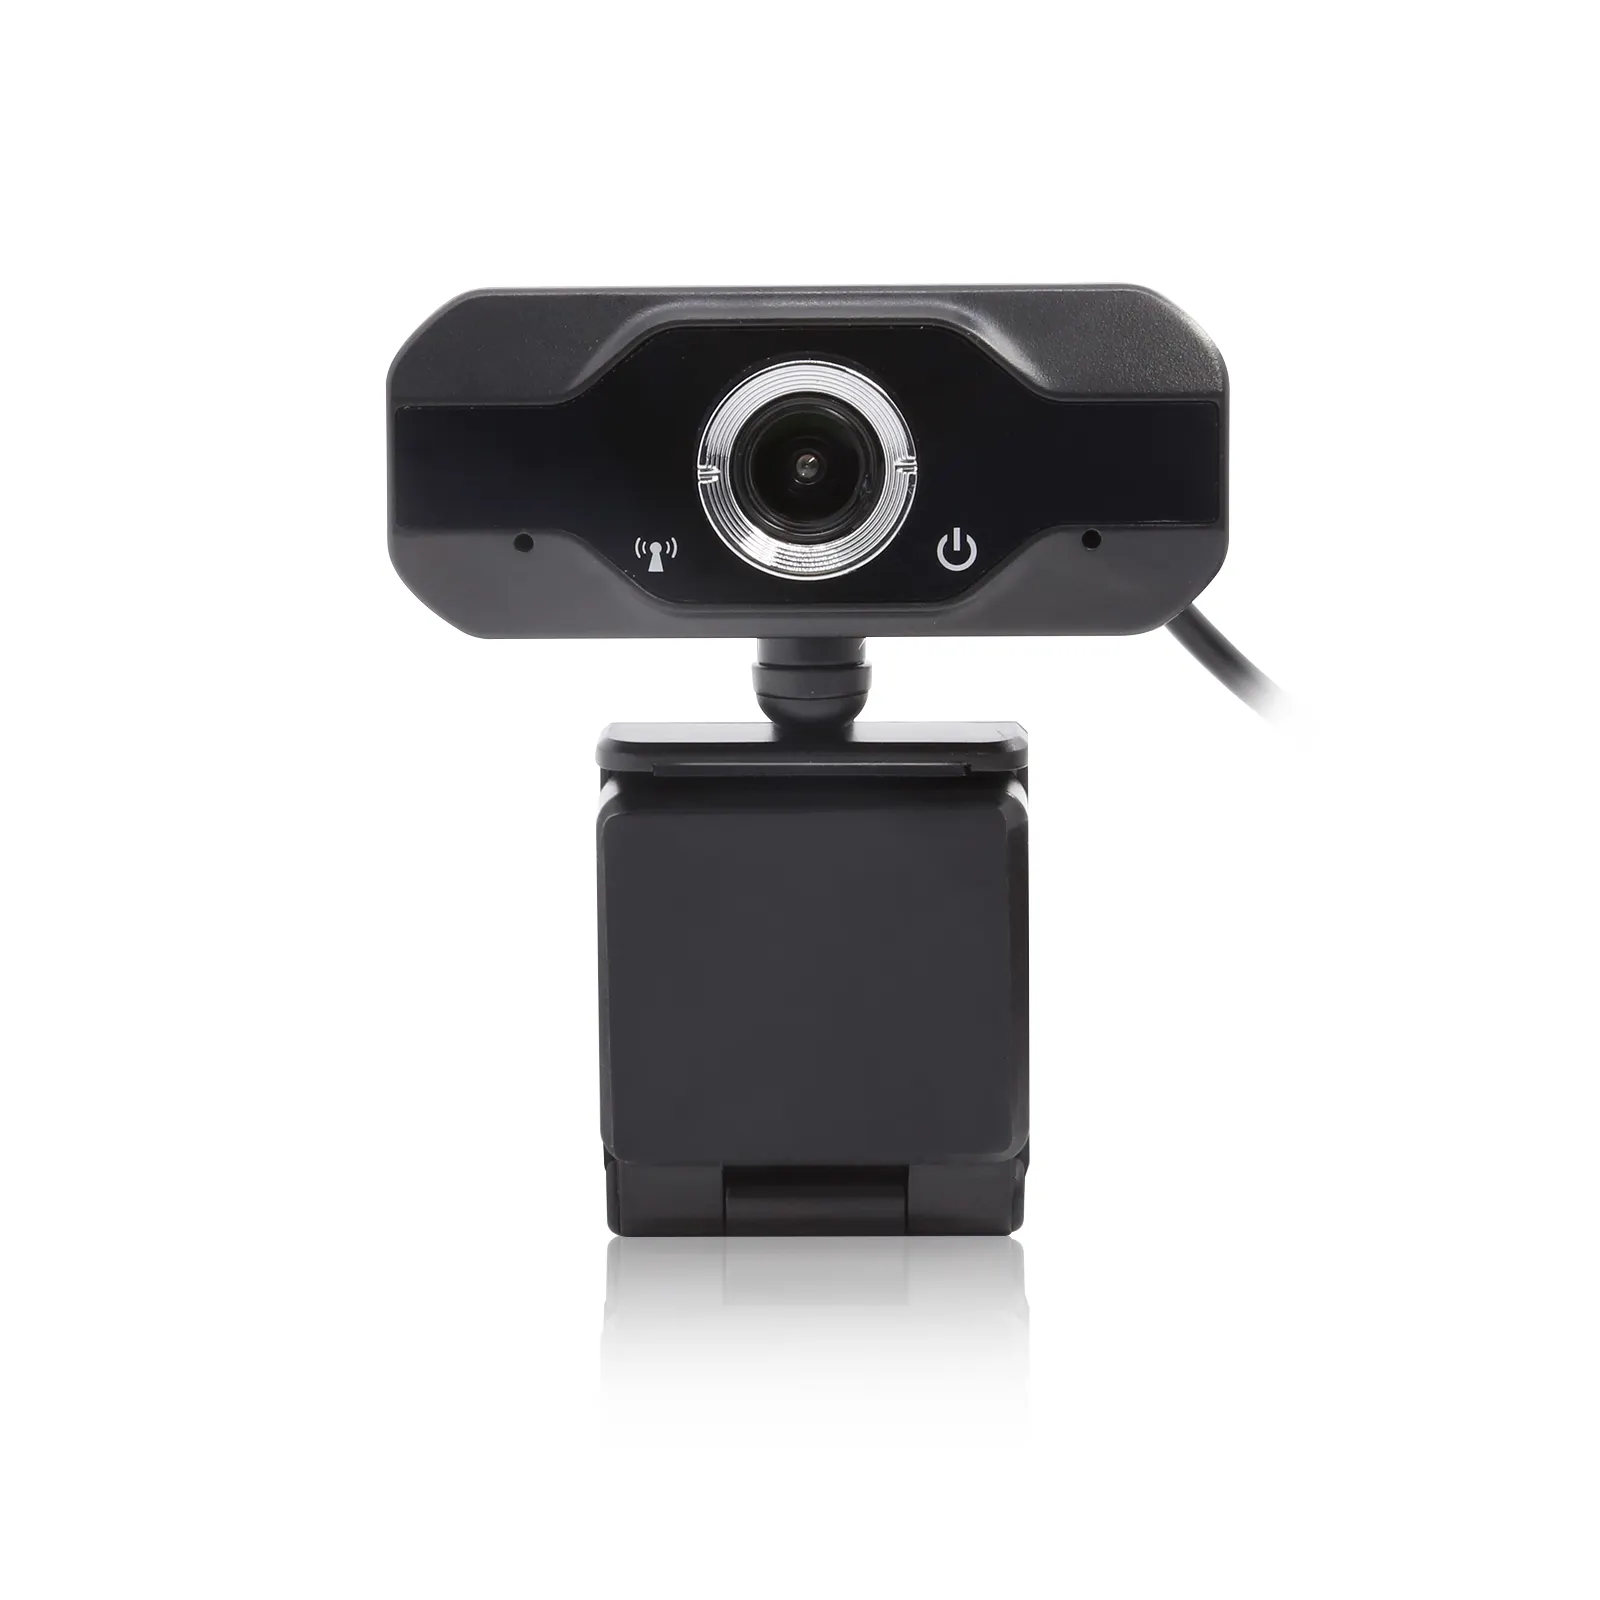 Usb2.0 plug e play 720p câmera de vídeo, captador altamente sensível, hd, para conferência, ensino on-line